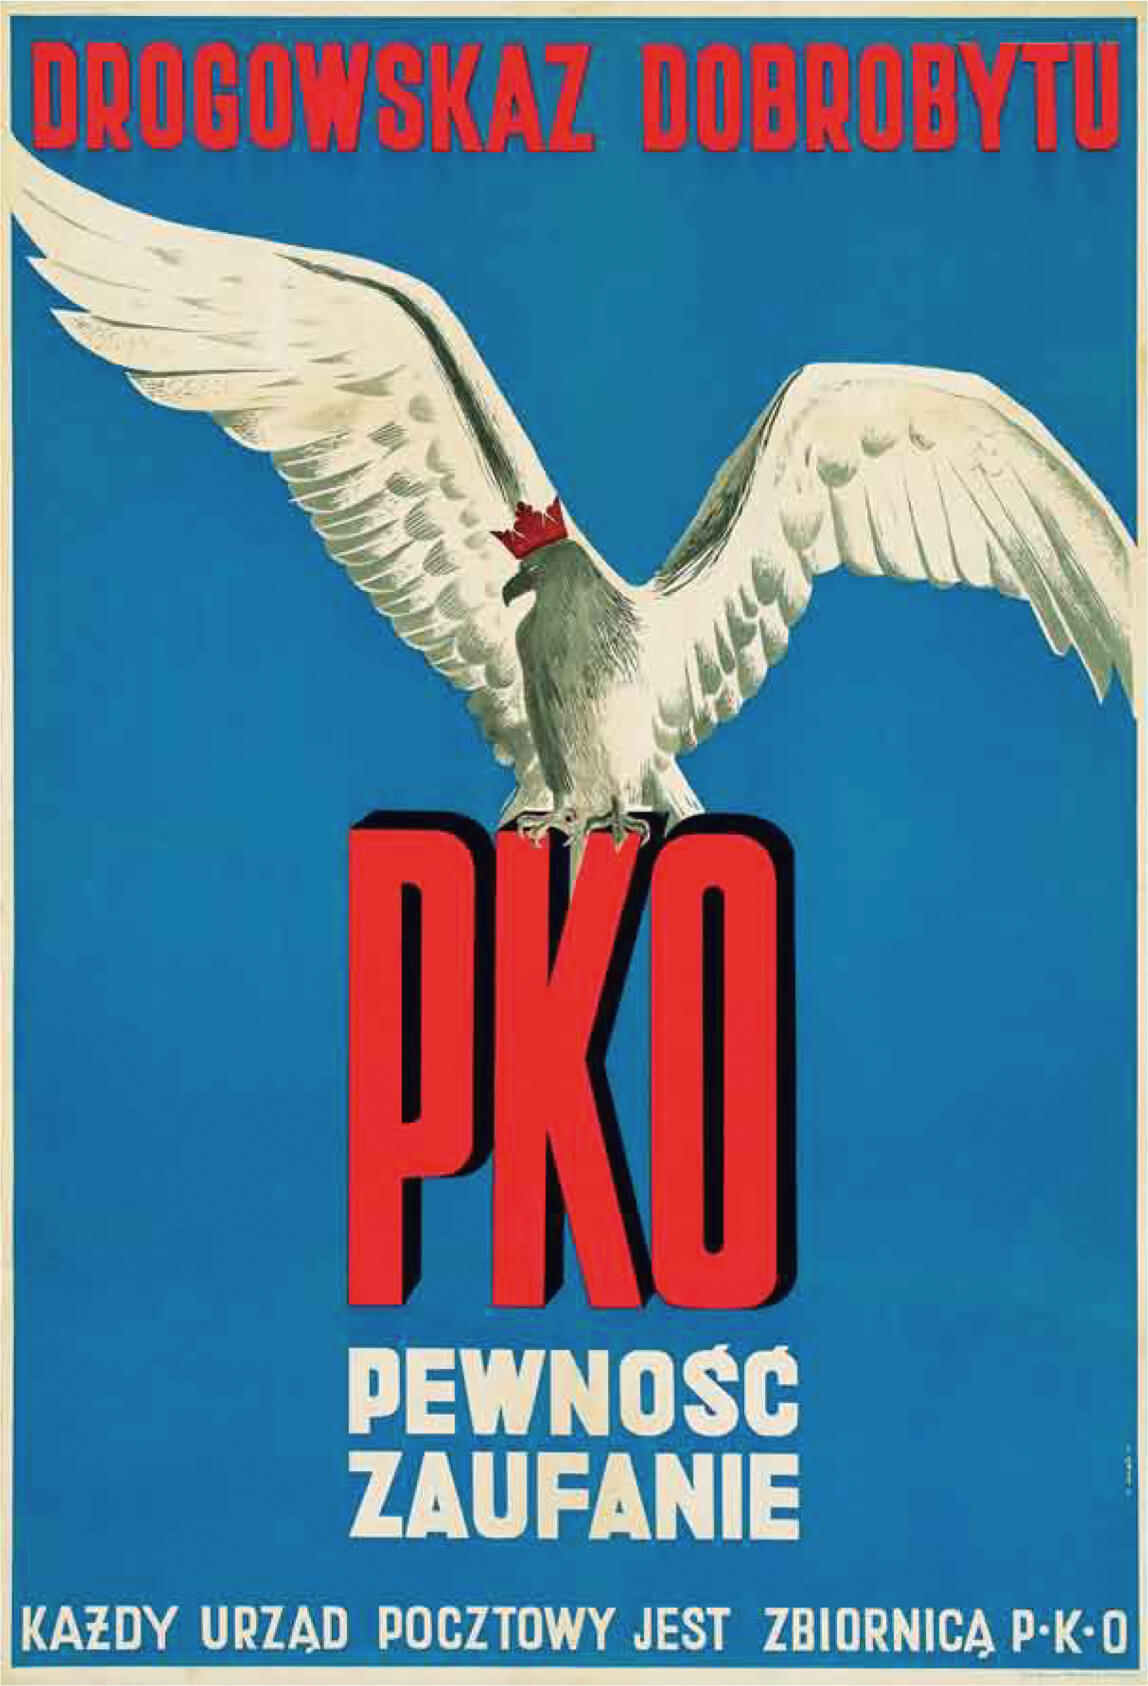 Plakat PKO - Pewność Zaufanie, 1930 rok